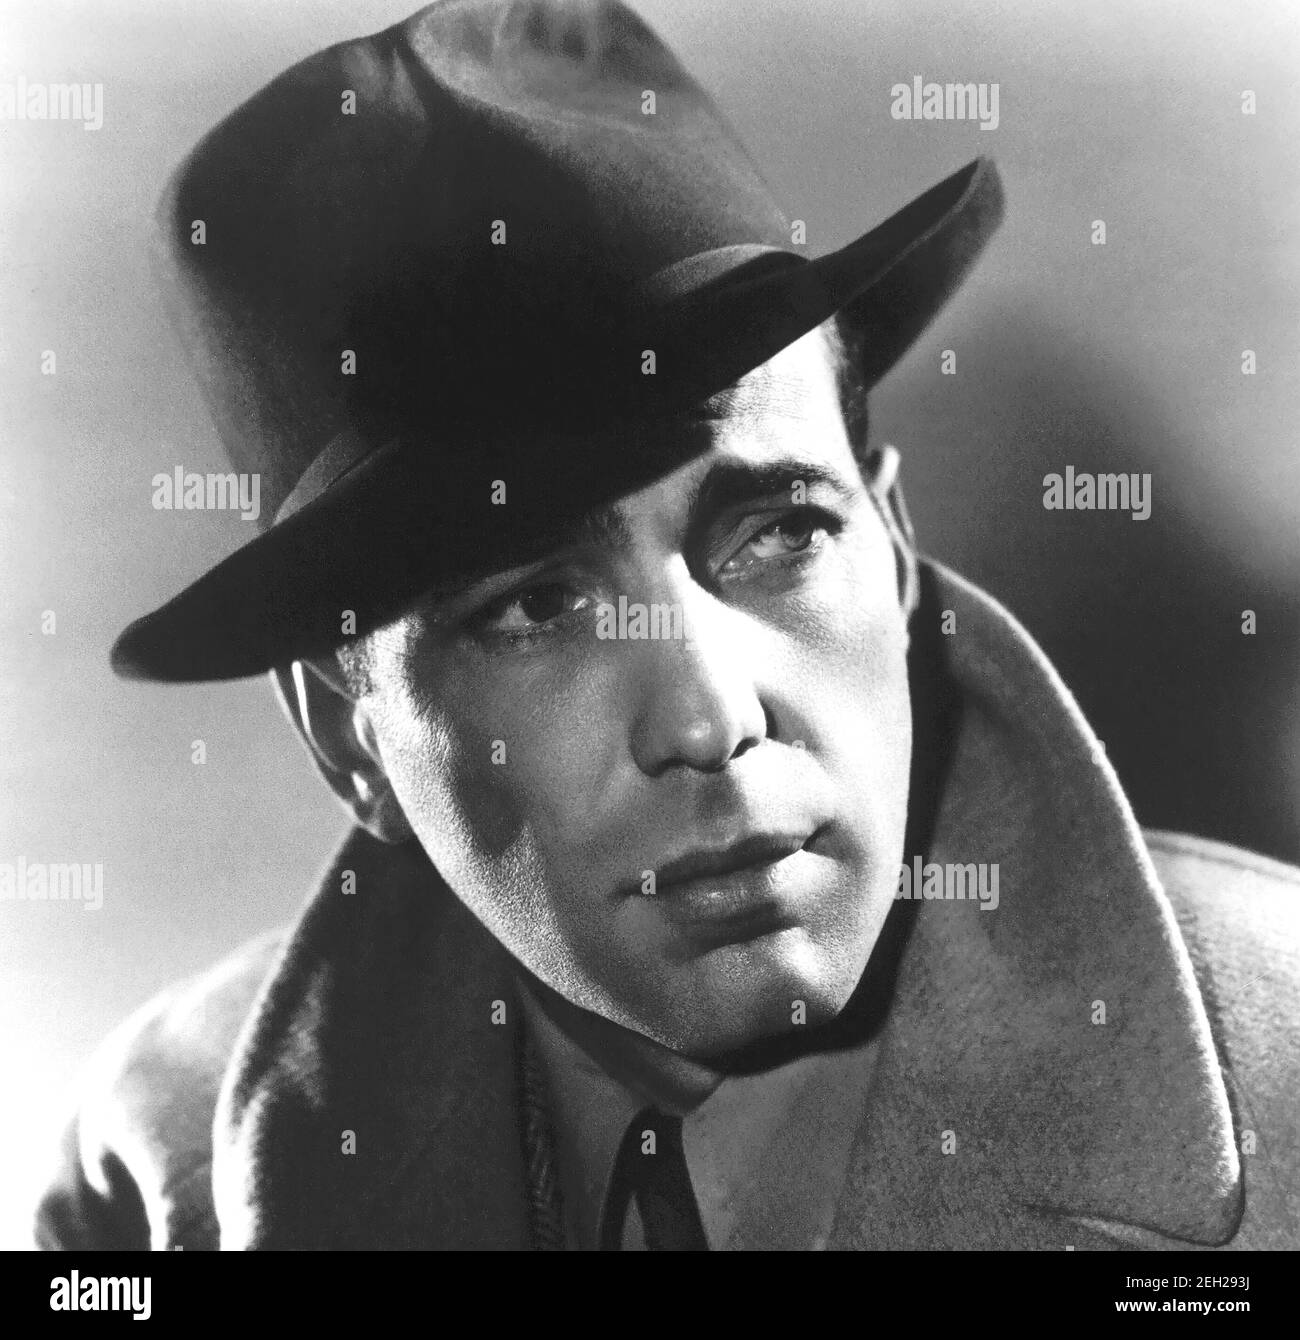 Humphrey Bogart, 1940, portrait noir et blanc, photo publicitaire. La sortie à l'arrière dit que c'était une nouvelle photo de lui du prochain film frère Orchid. Banque D'Images